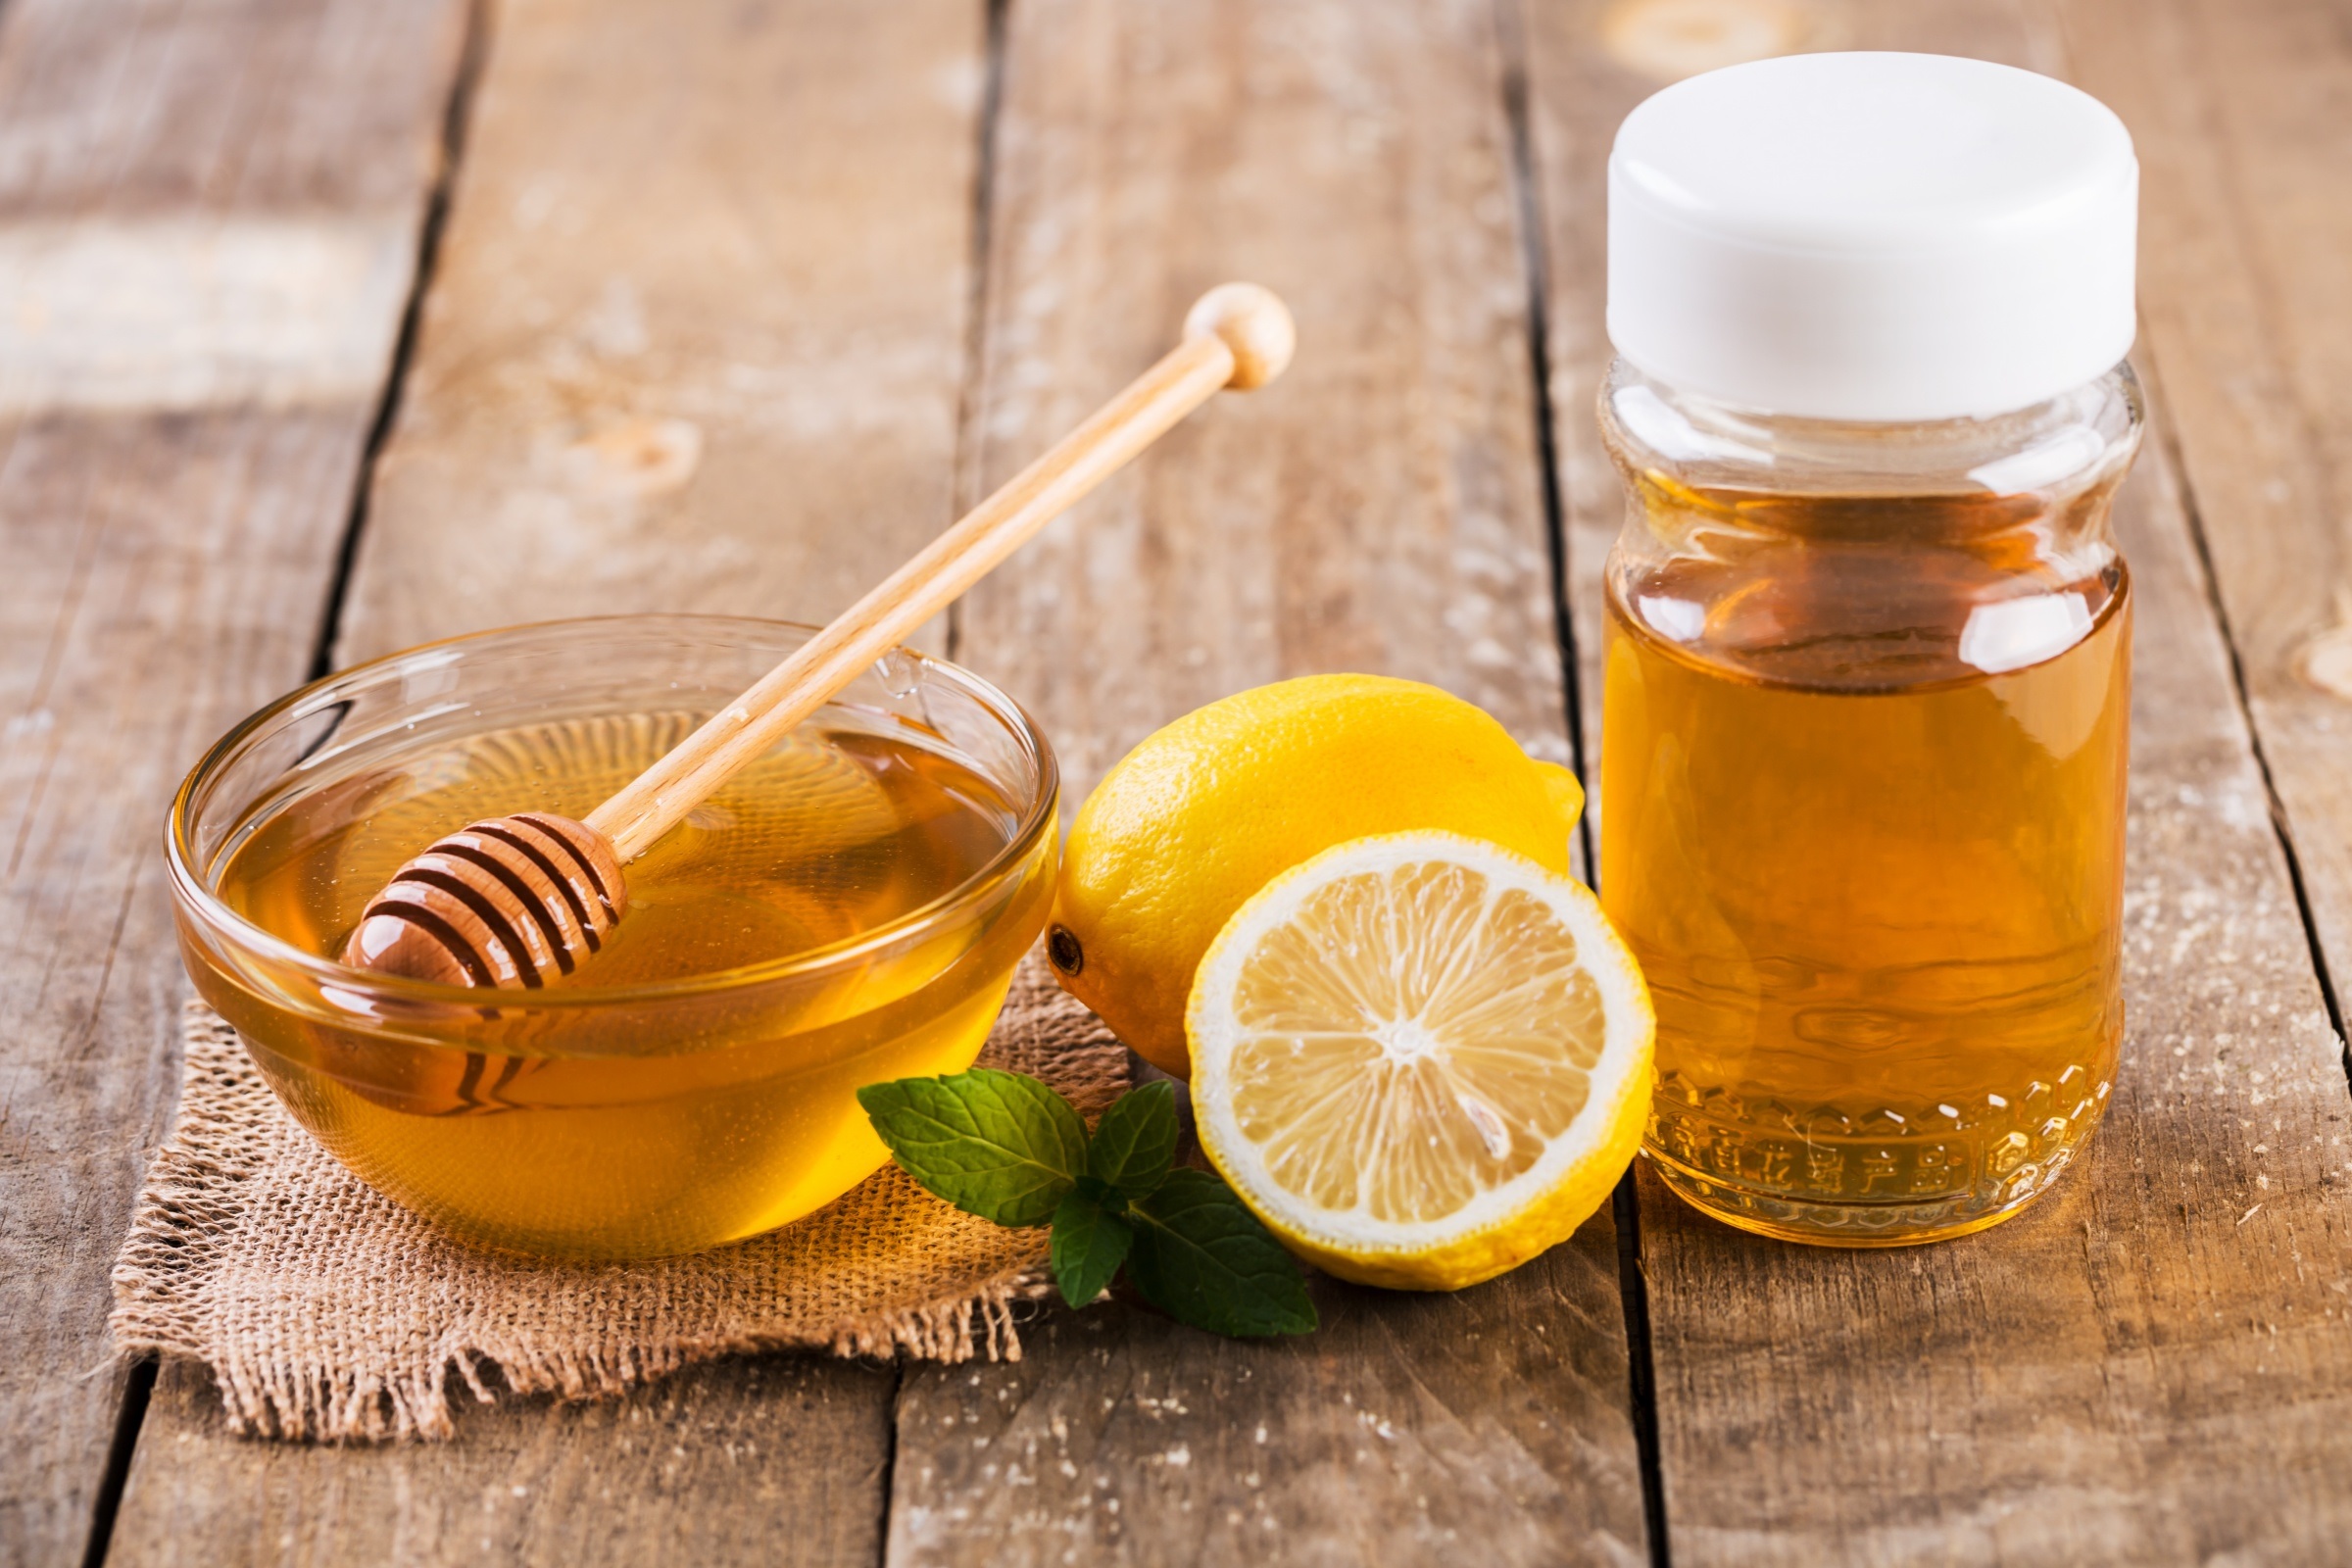 Chanh và mật ong là bài thuốc trị bệnh ho được nhiều người sử dụng